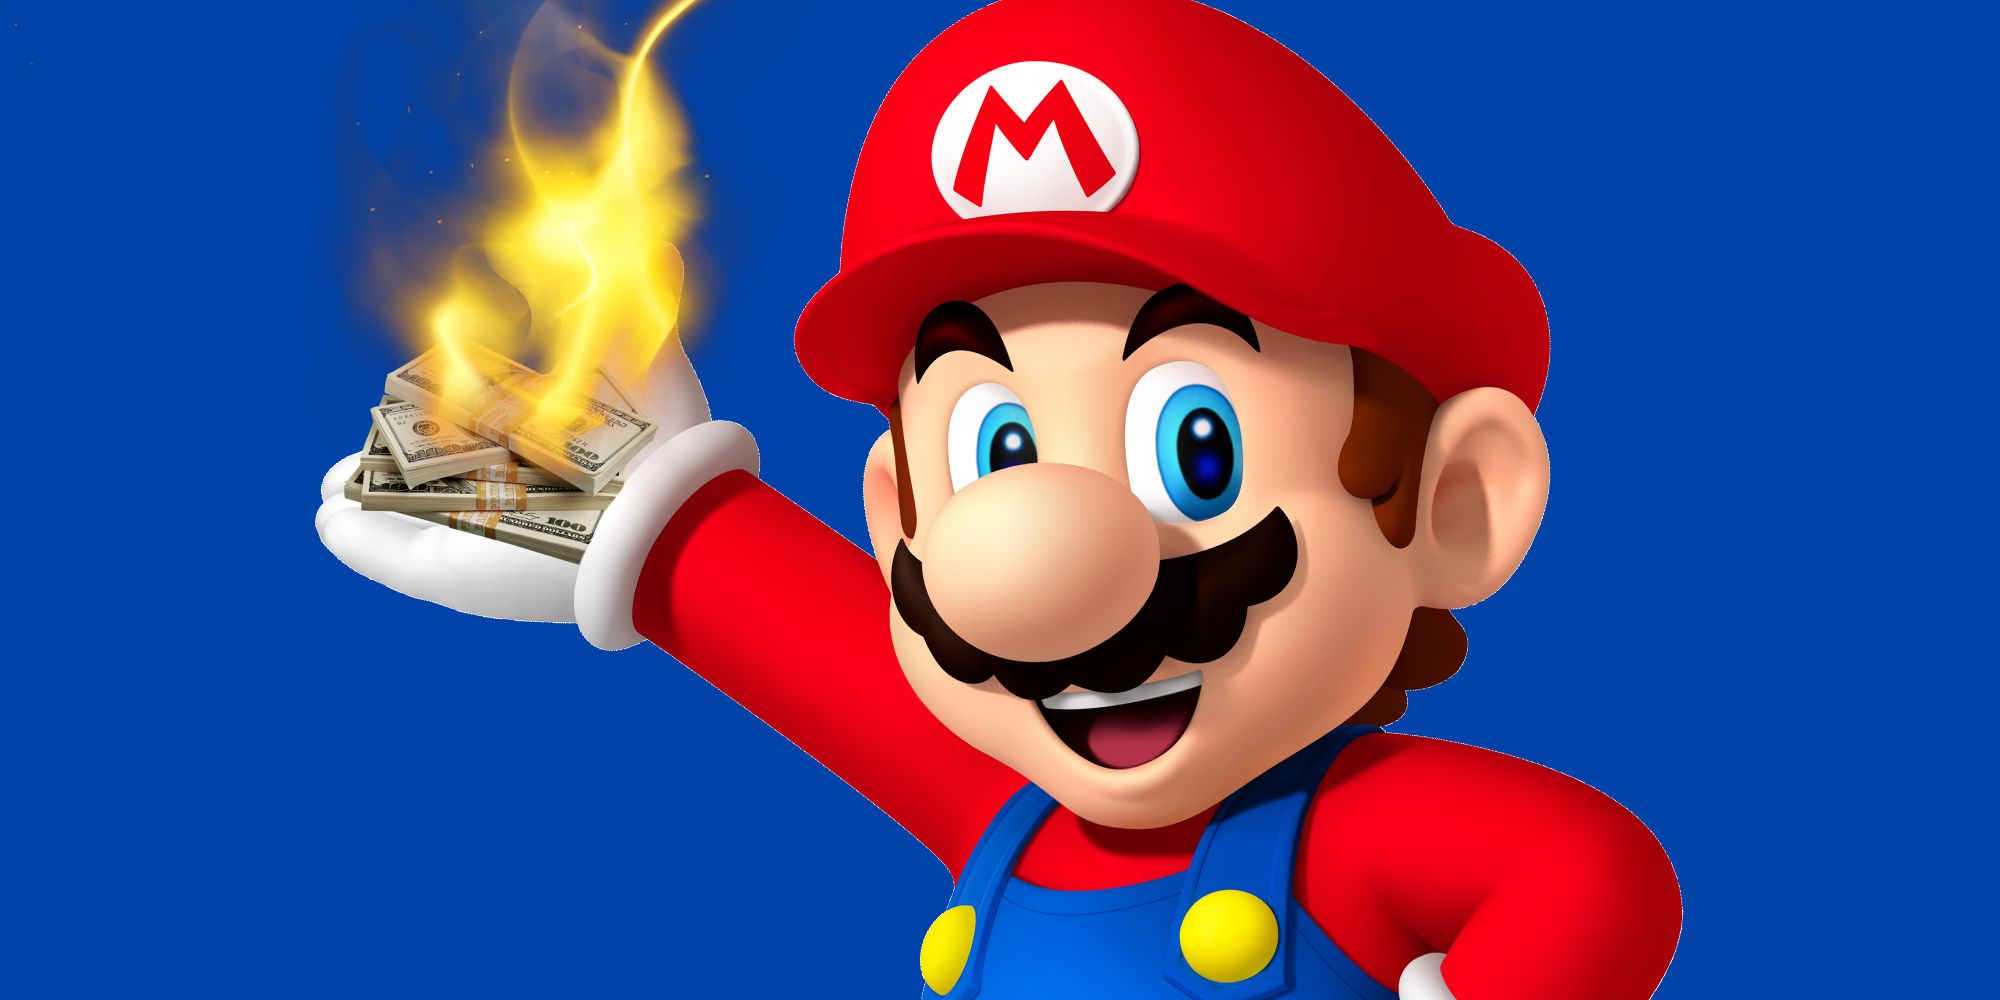 Mario burning money